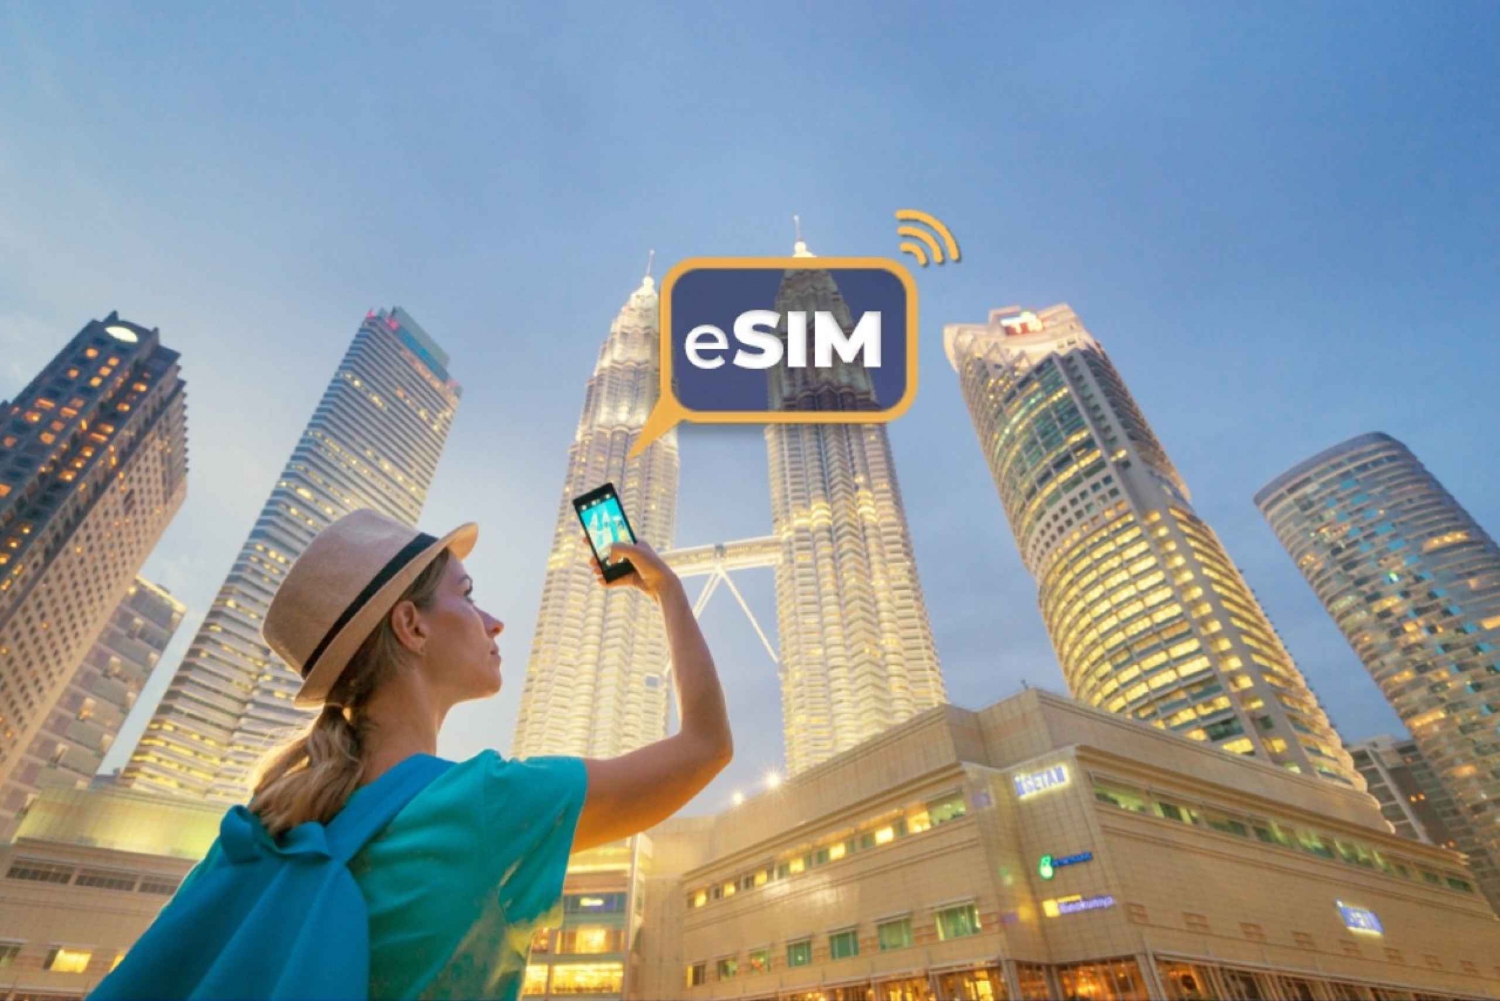 Malezja: mobilna transmisja danych w roamingu z eSIM do pobrania